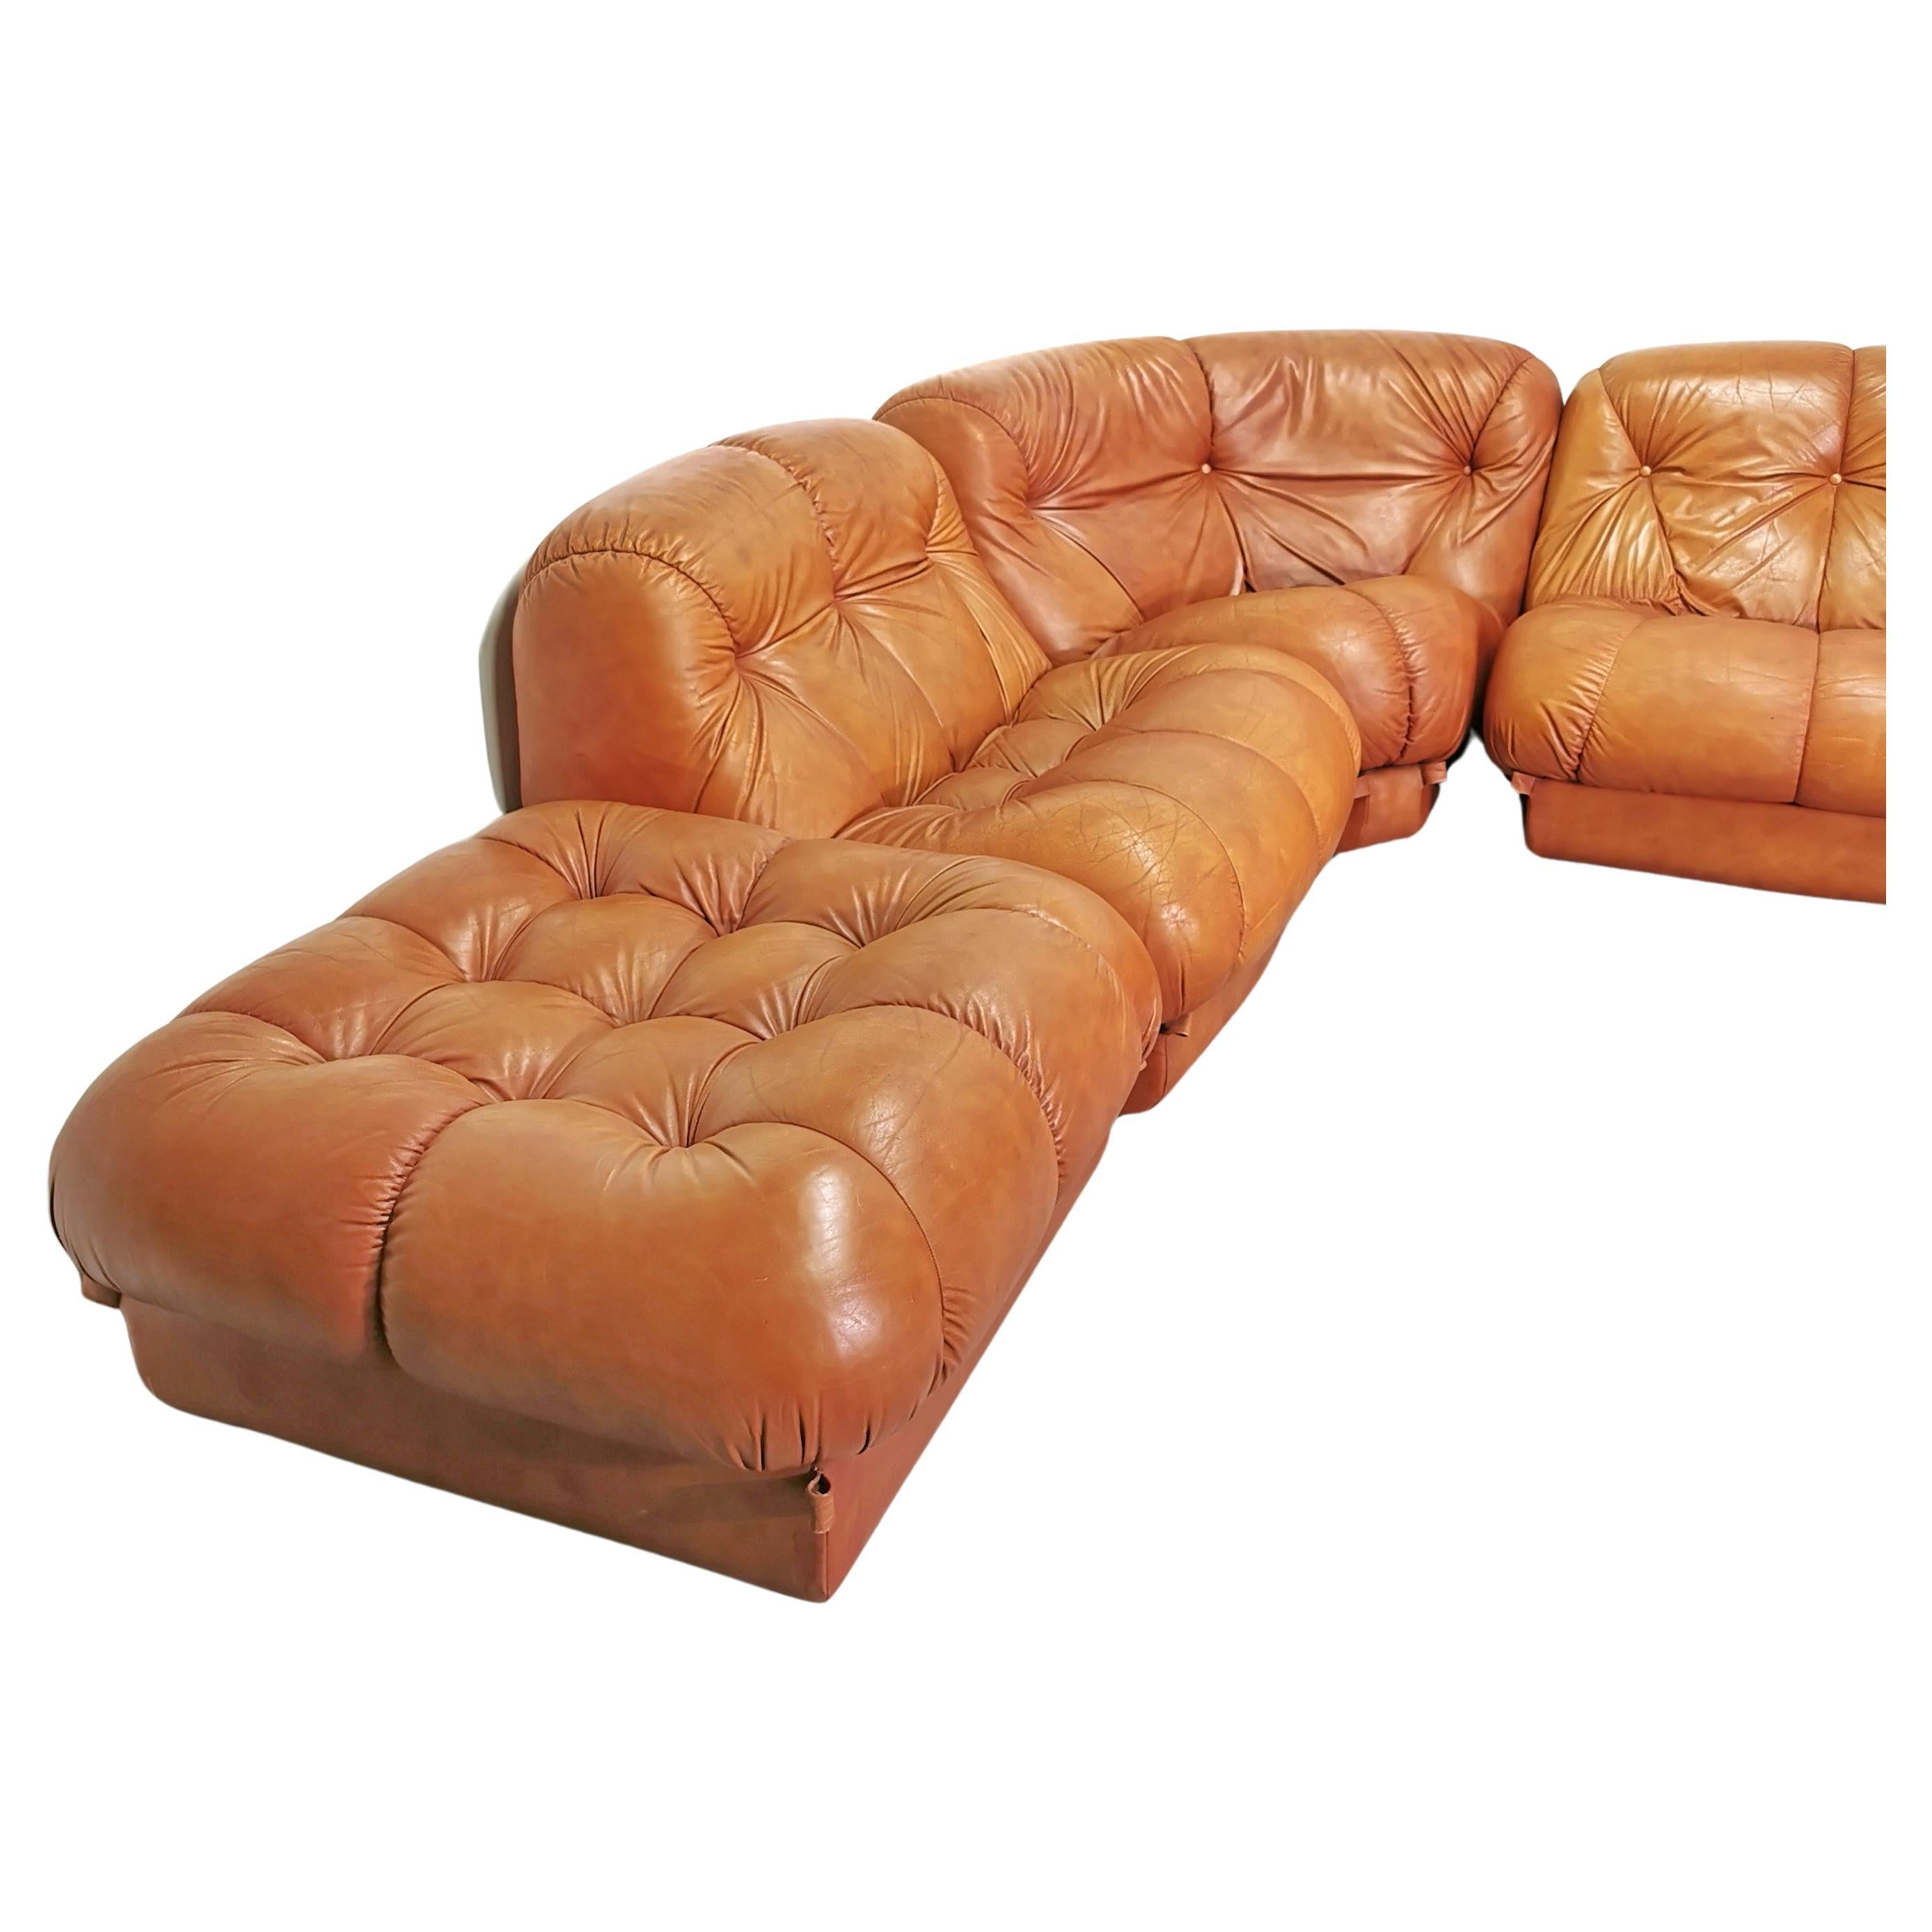 Canapé modulaire en cuir cognaq modèle Nuvolone conçu dans les années 1970 par Rino Maturi pour Mimo Design. le canapé est composé de  par 5 places dont 1 ottoman et un module d'angle. le canapé est en très bon état avec de petites traces du